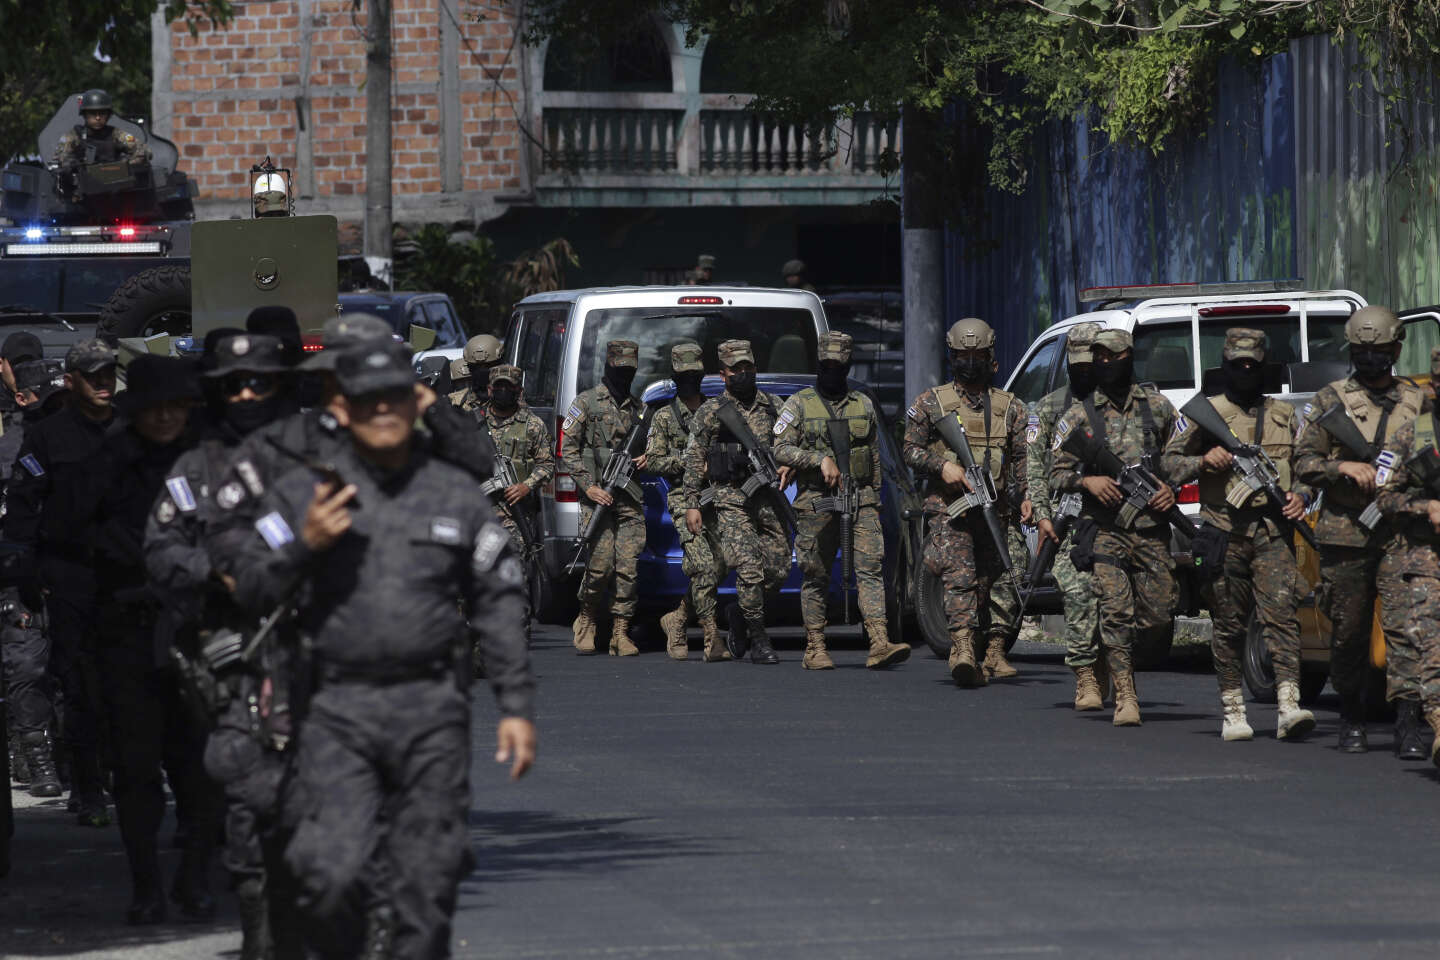 Au Salvador, une spectaculaire opération conduit à l’arrestation de plus de 140 membres présumés de gangs